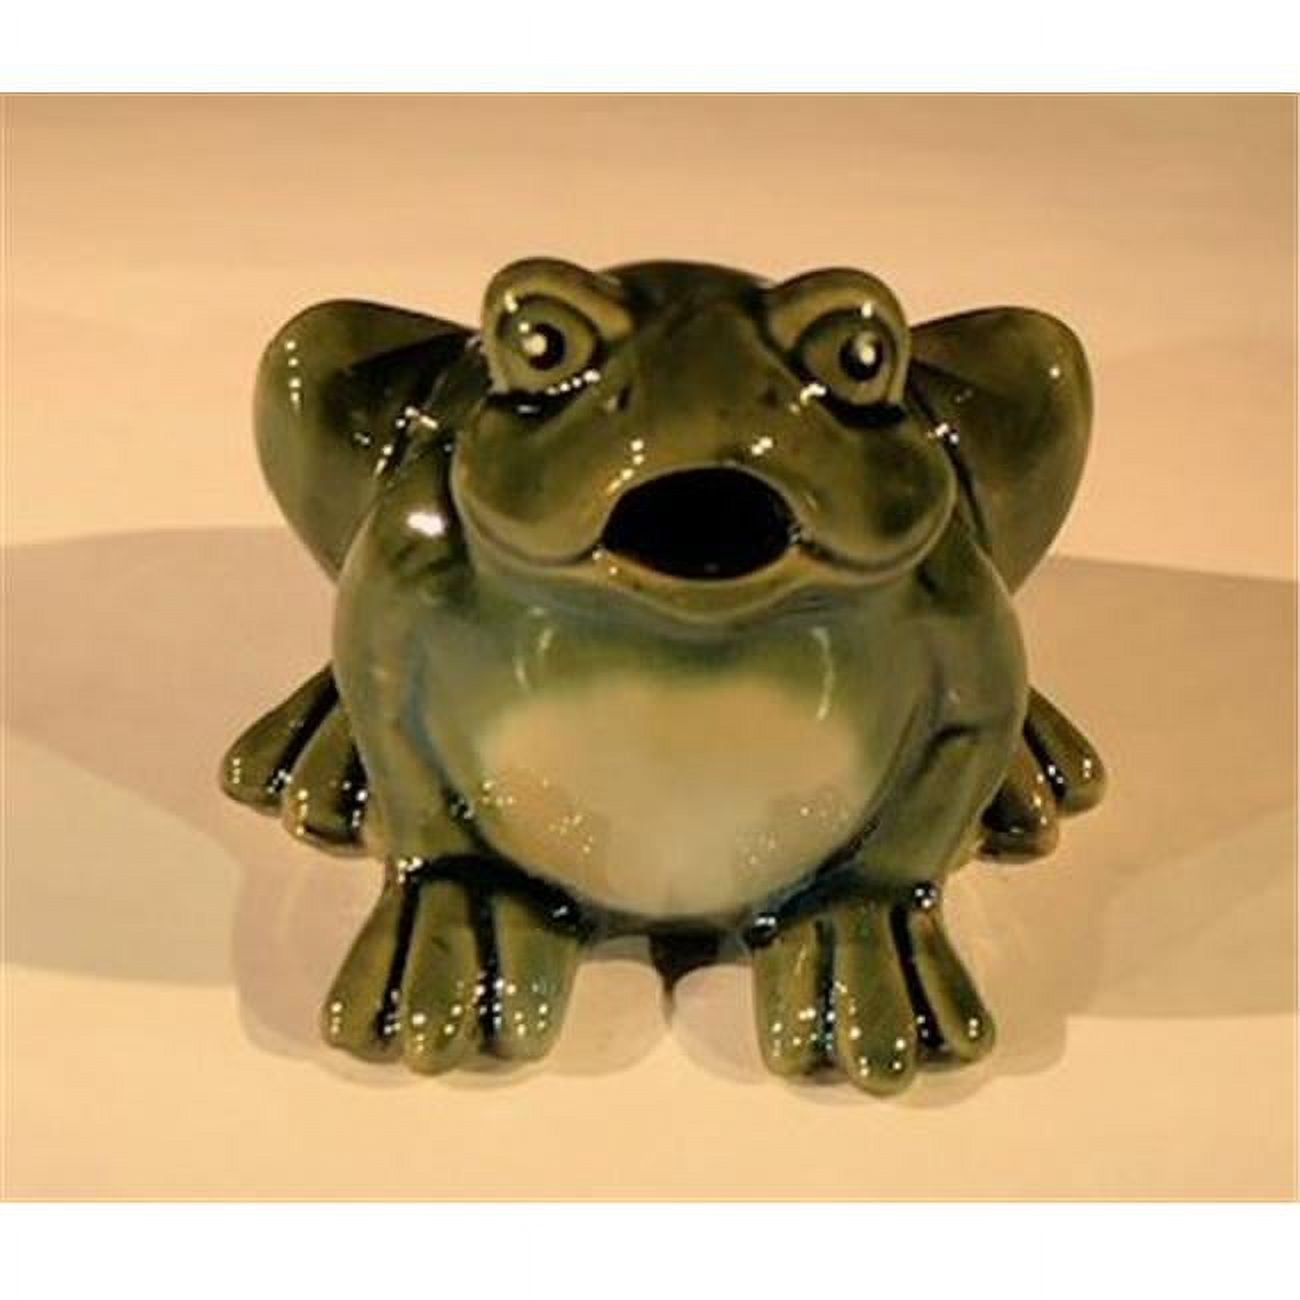 Picture of Bonsai Boy e3478 3 in. Miniature Ceramic Frog Figurine